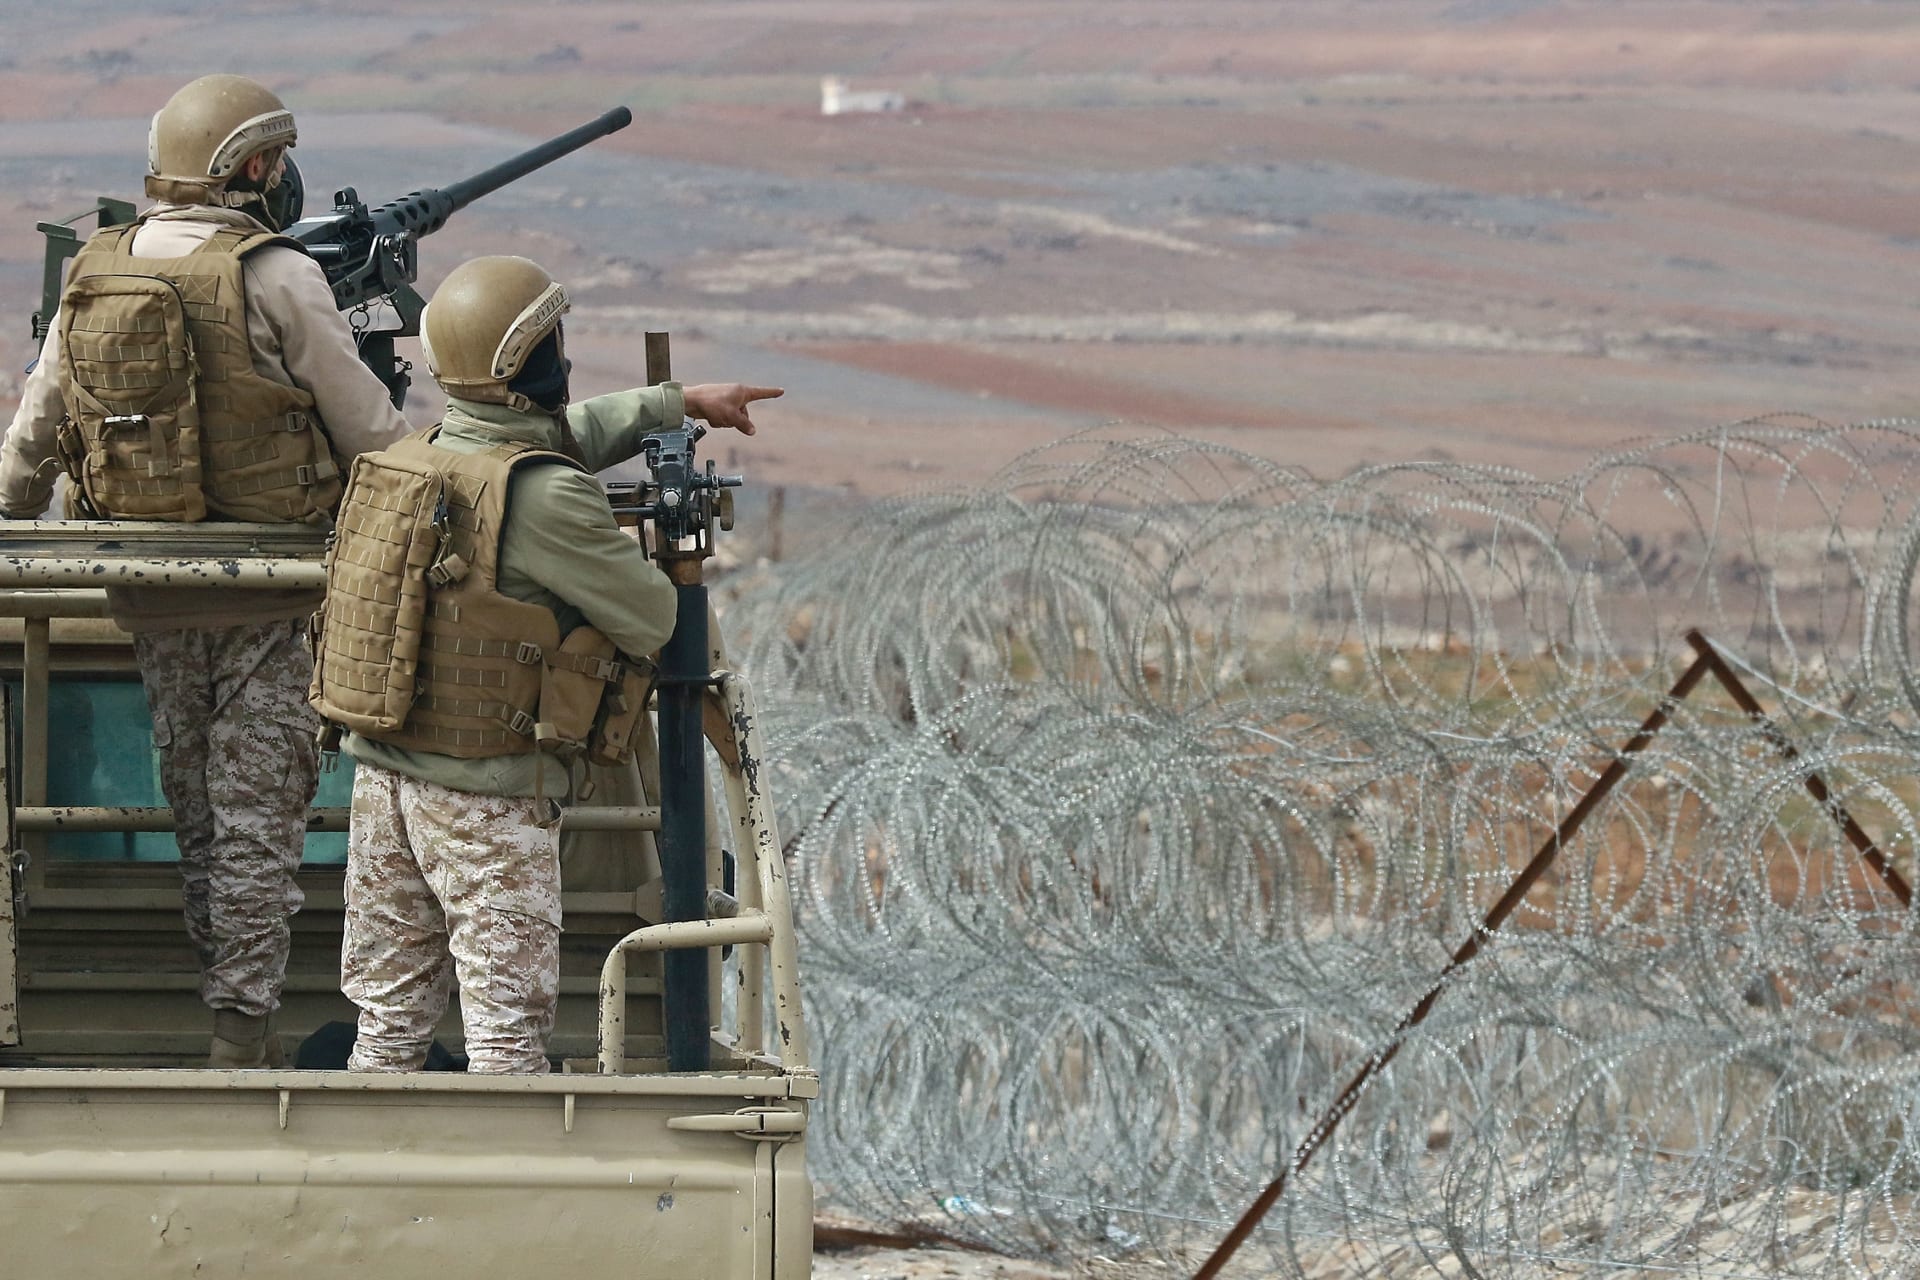 الجيش الأردني يعلن إحباط تهريب كميات من الكبتاغون والحشيش قادمة من سوريا وفرار المهربين